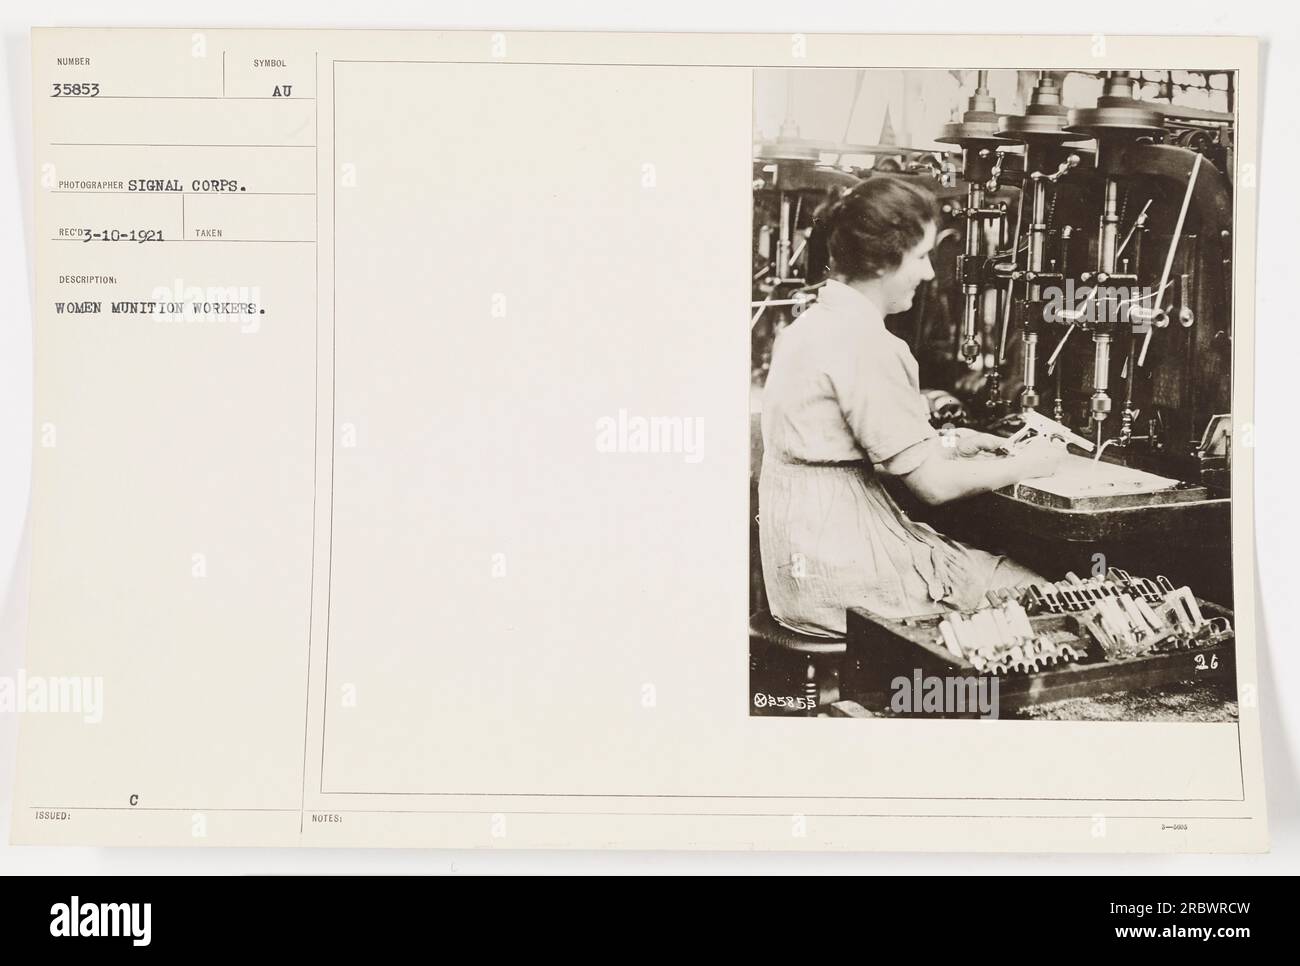 Donne operatrici di munizioni nella prima guerra mondiale. La fotografia numero 35853, scattata dal Signal Corps, mostra un gruppo di donne in un ambiente di fabbrica. La data della fotografia è registrata il 10 marzo 1921. Le donne nella foto stanno probabilmente contribuendo allo sforzo bellico producendo munizioni. Foto Stock